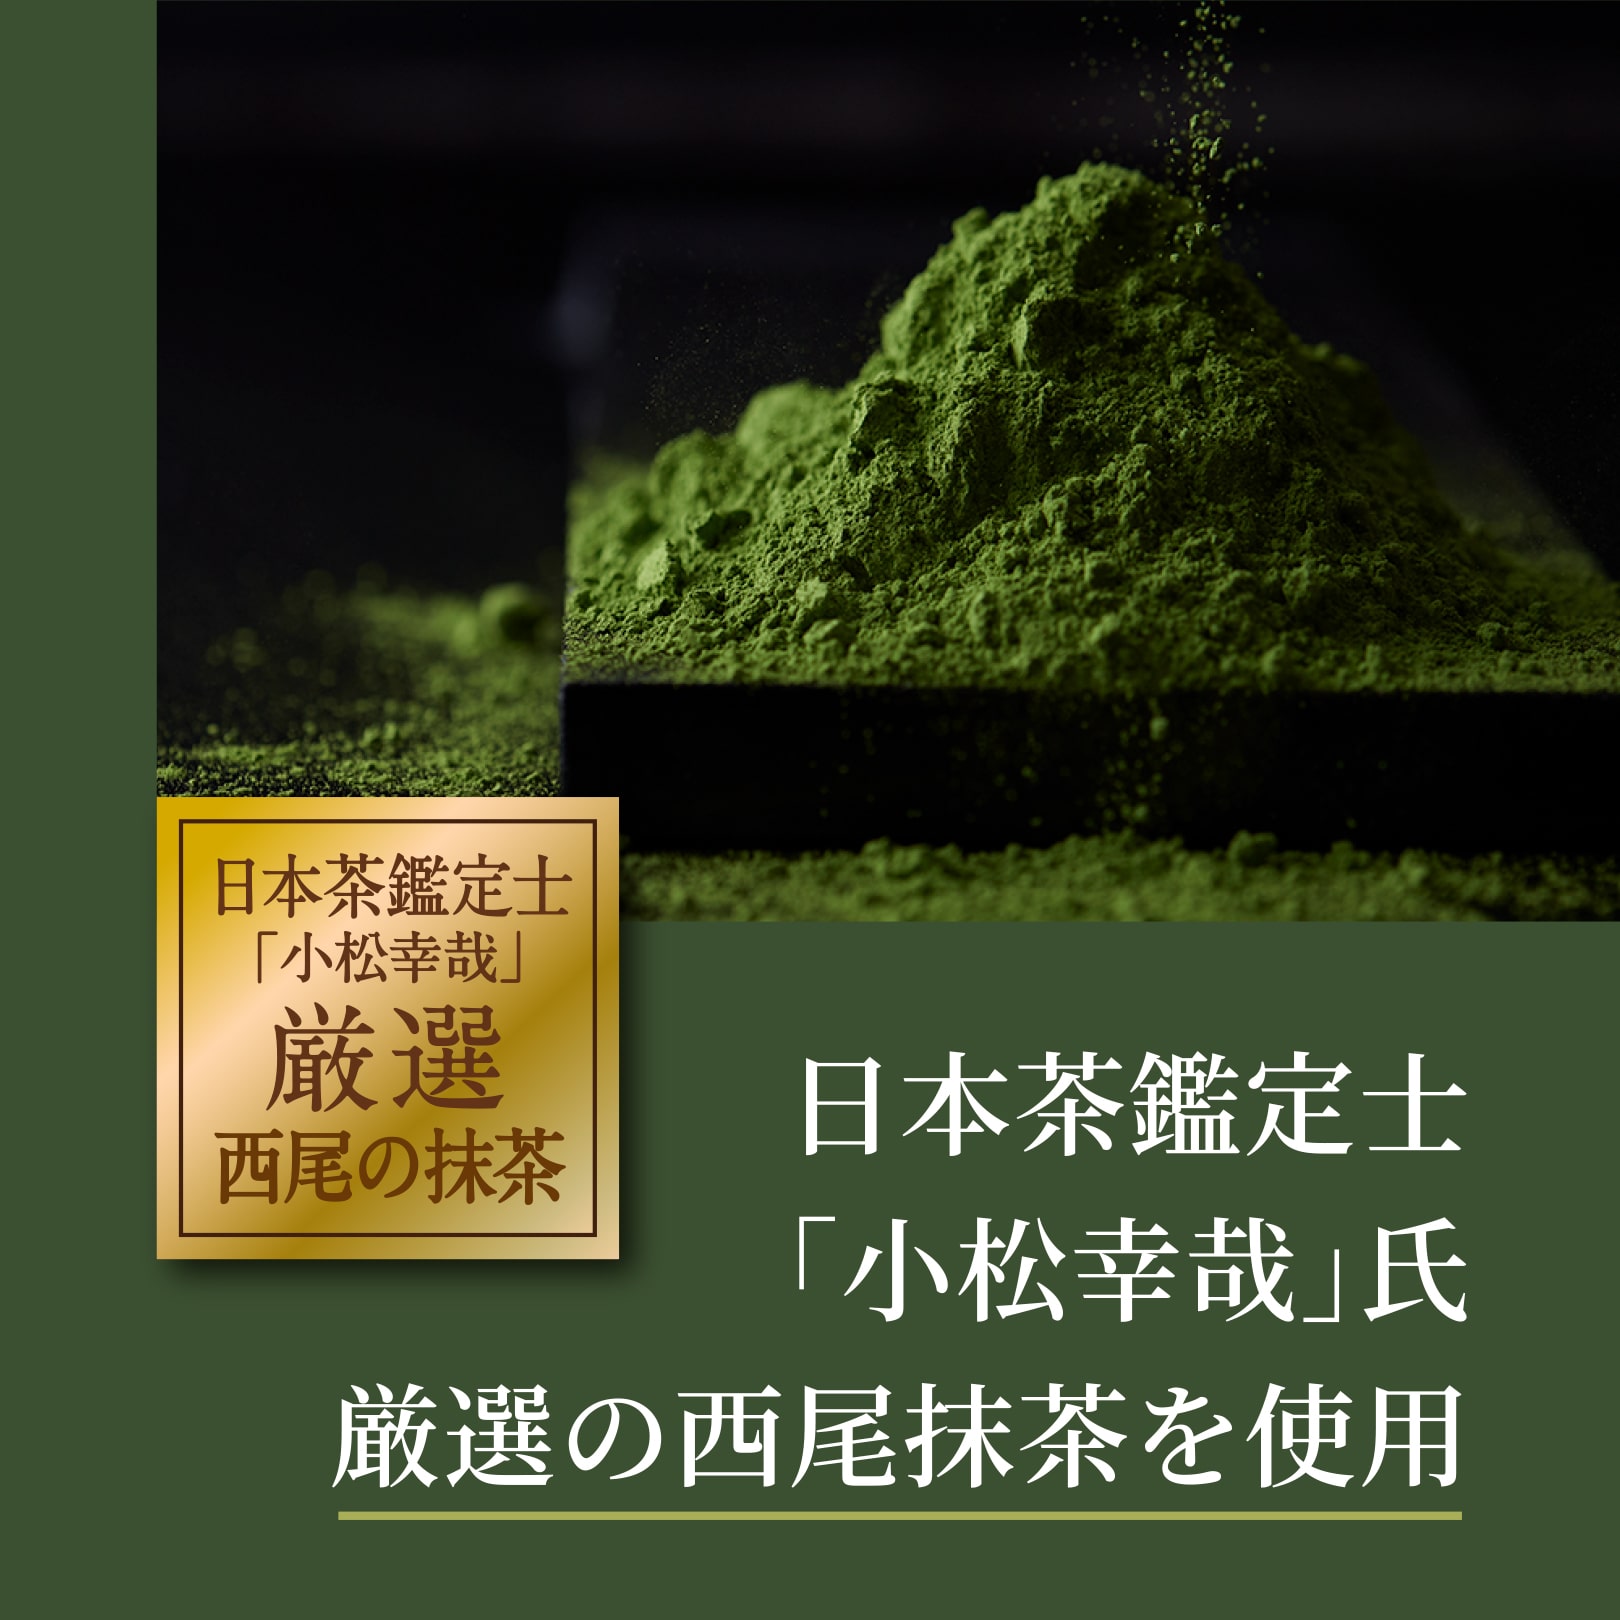 日本茶鑑定士「小松幸哉」氏厳選の西尾抹茶を使用